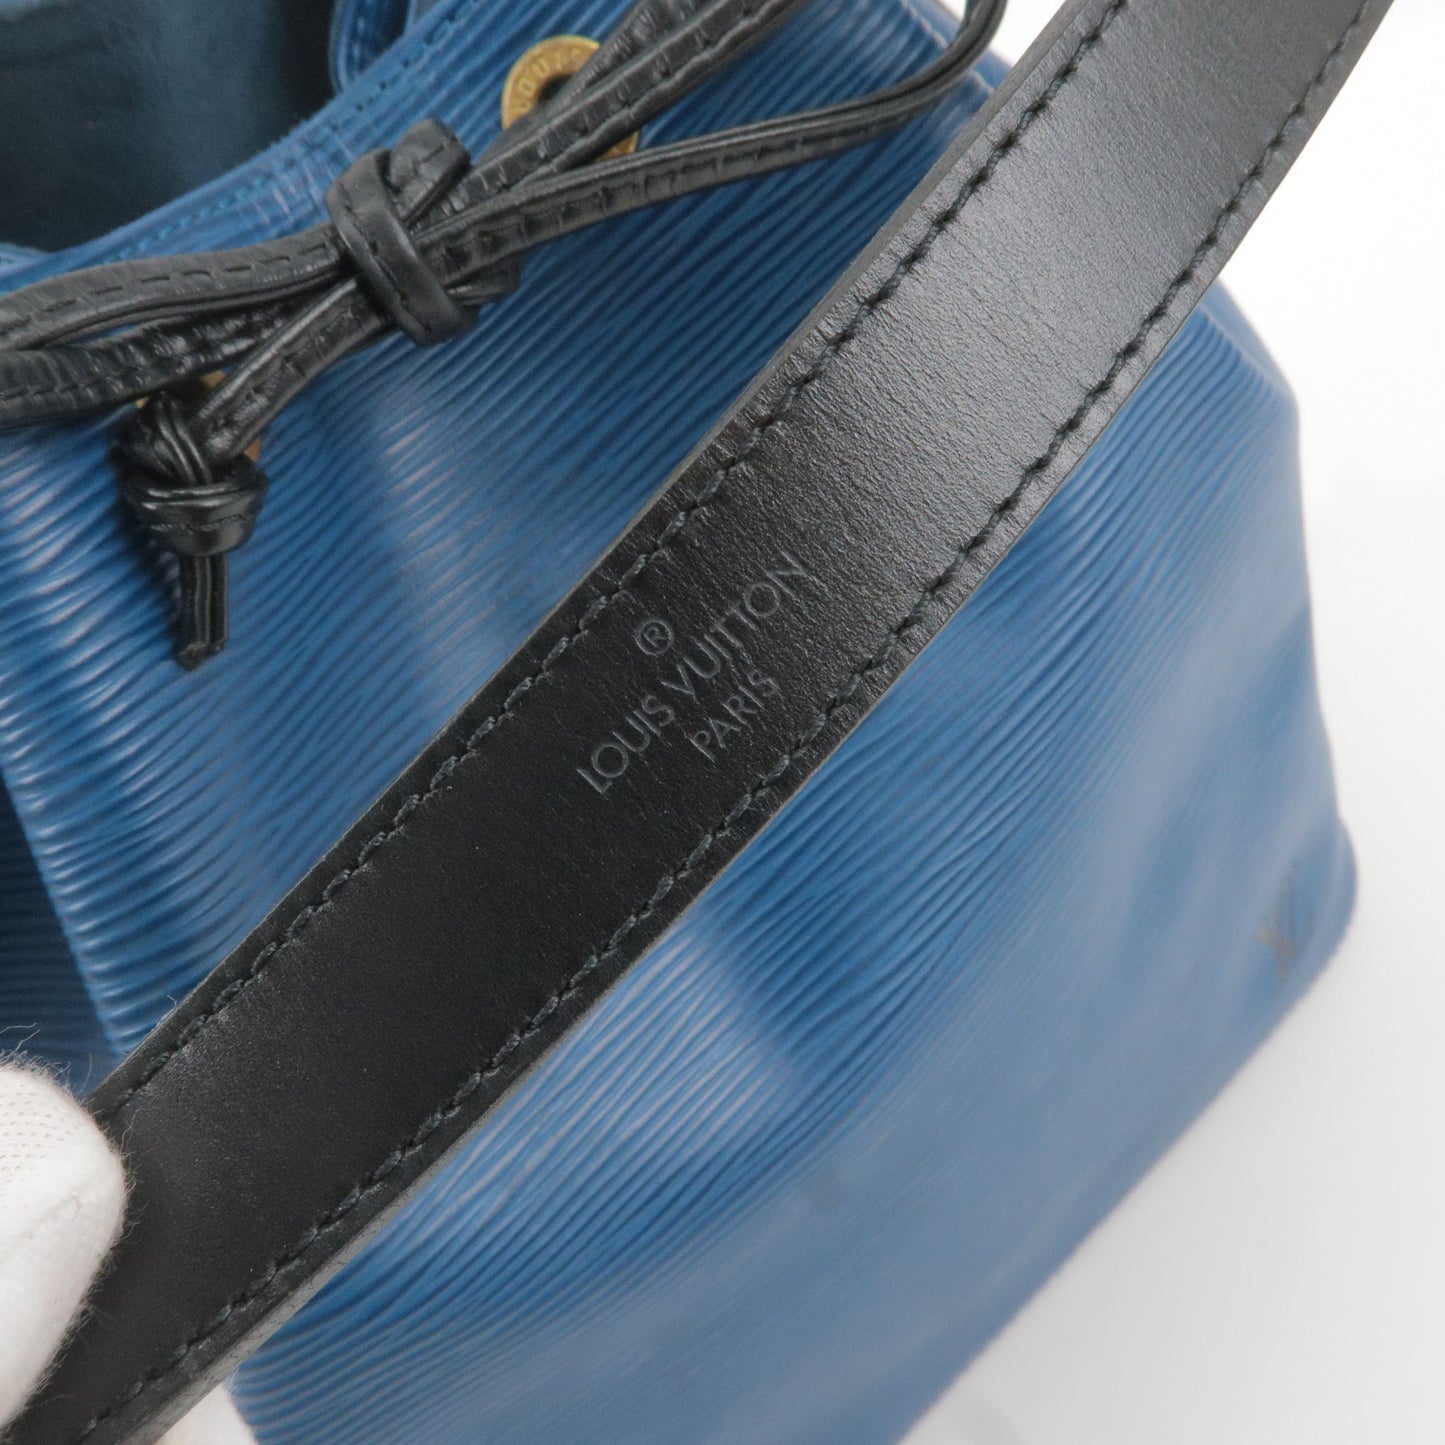 Louis Vuitton Epi Petit Noe Shoulder Bag Toledo Blue M44152